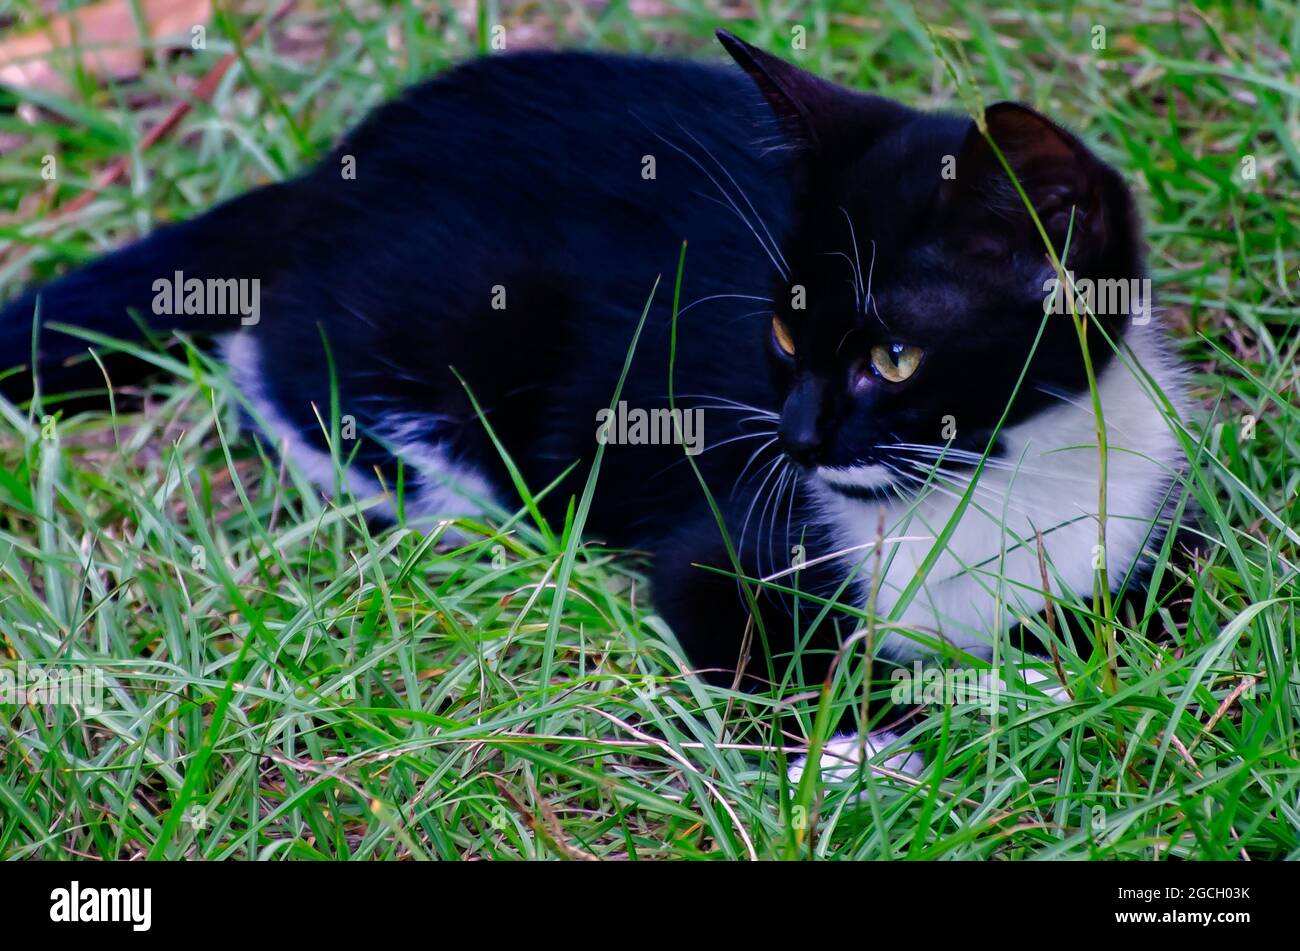 Fancy, ein schwarz-weißes Smoking-Kätzchen, spielt im Gras, 8. August 2021. Smoking-Katzen sind nach ihrem schwarz-weißen Farbmuster benannt. Stockfoto